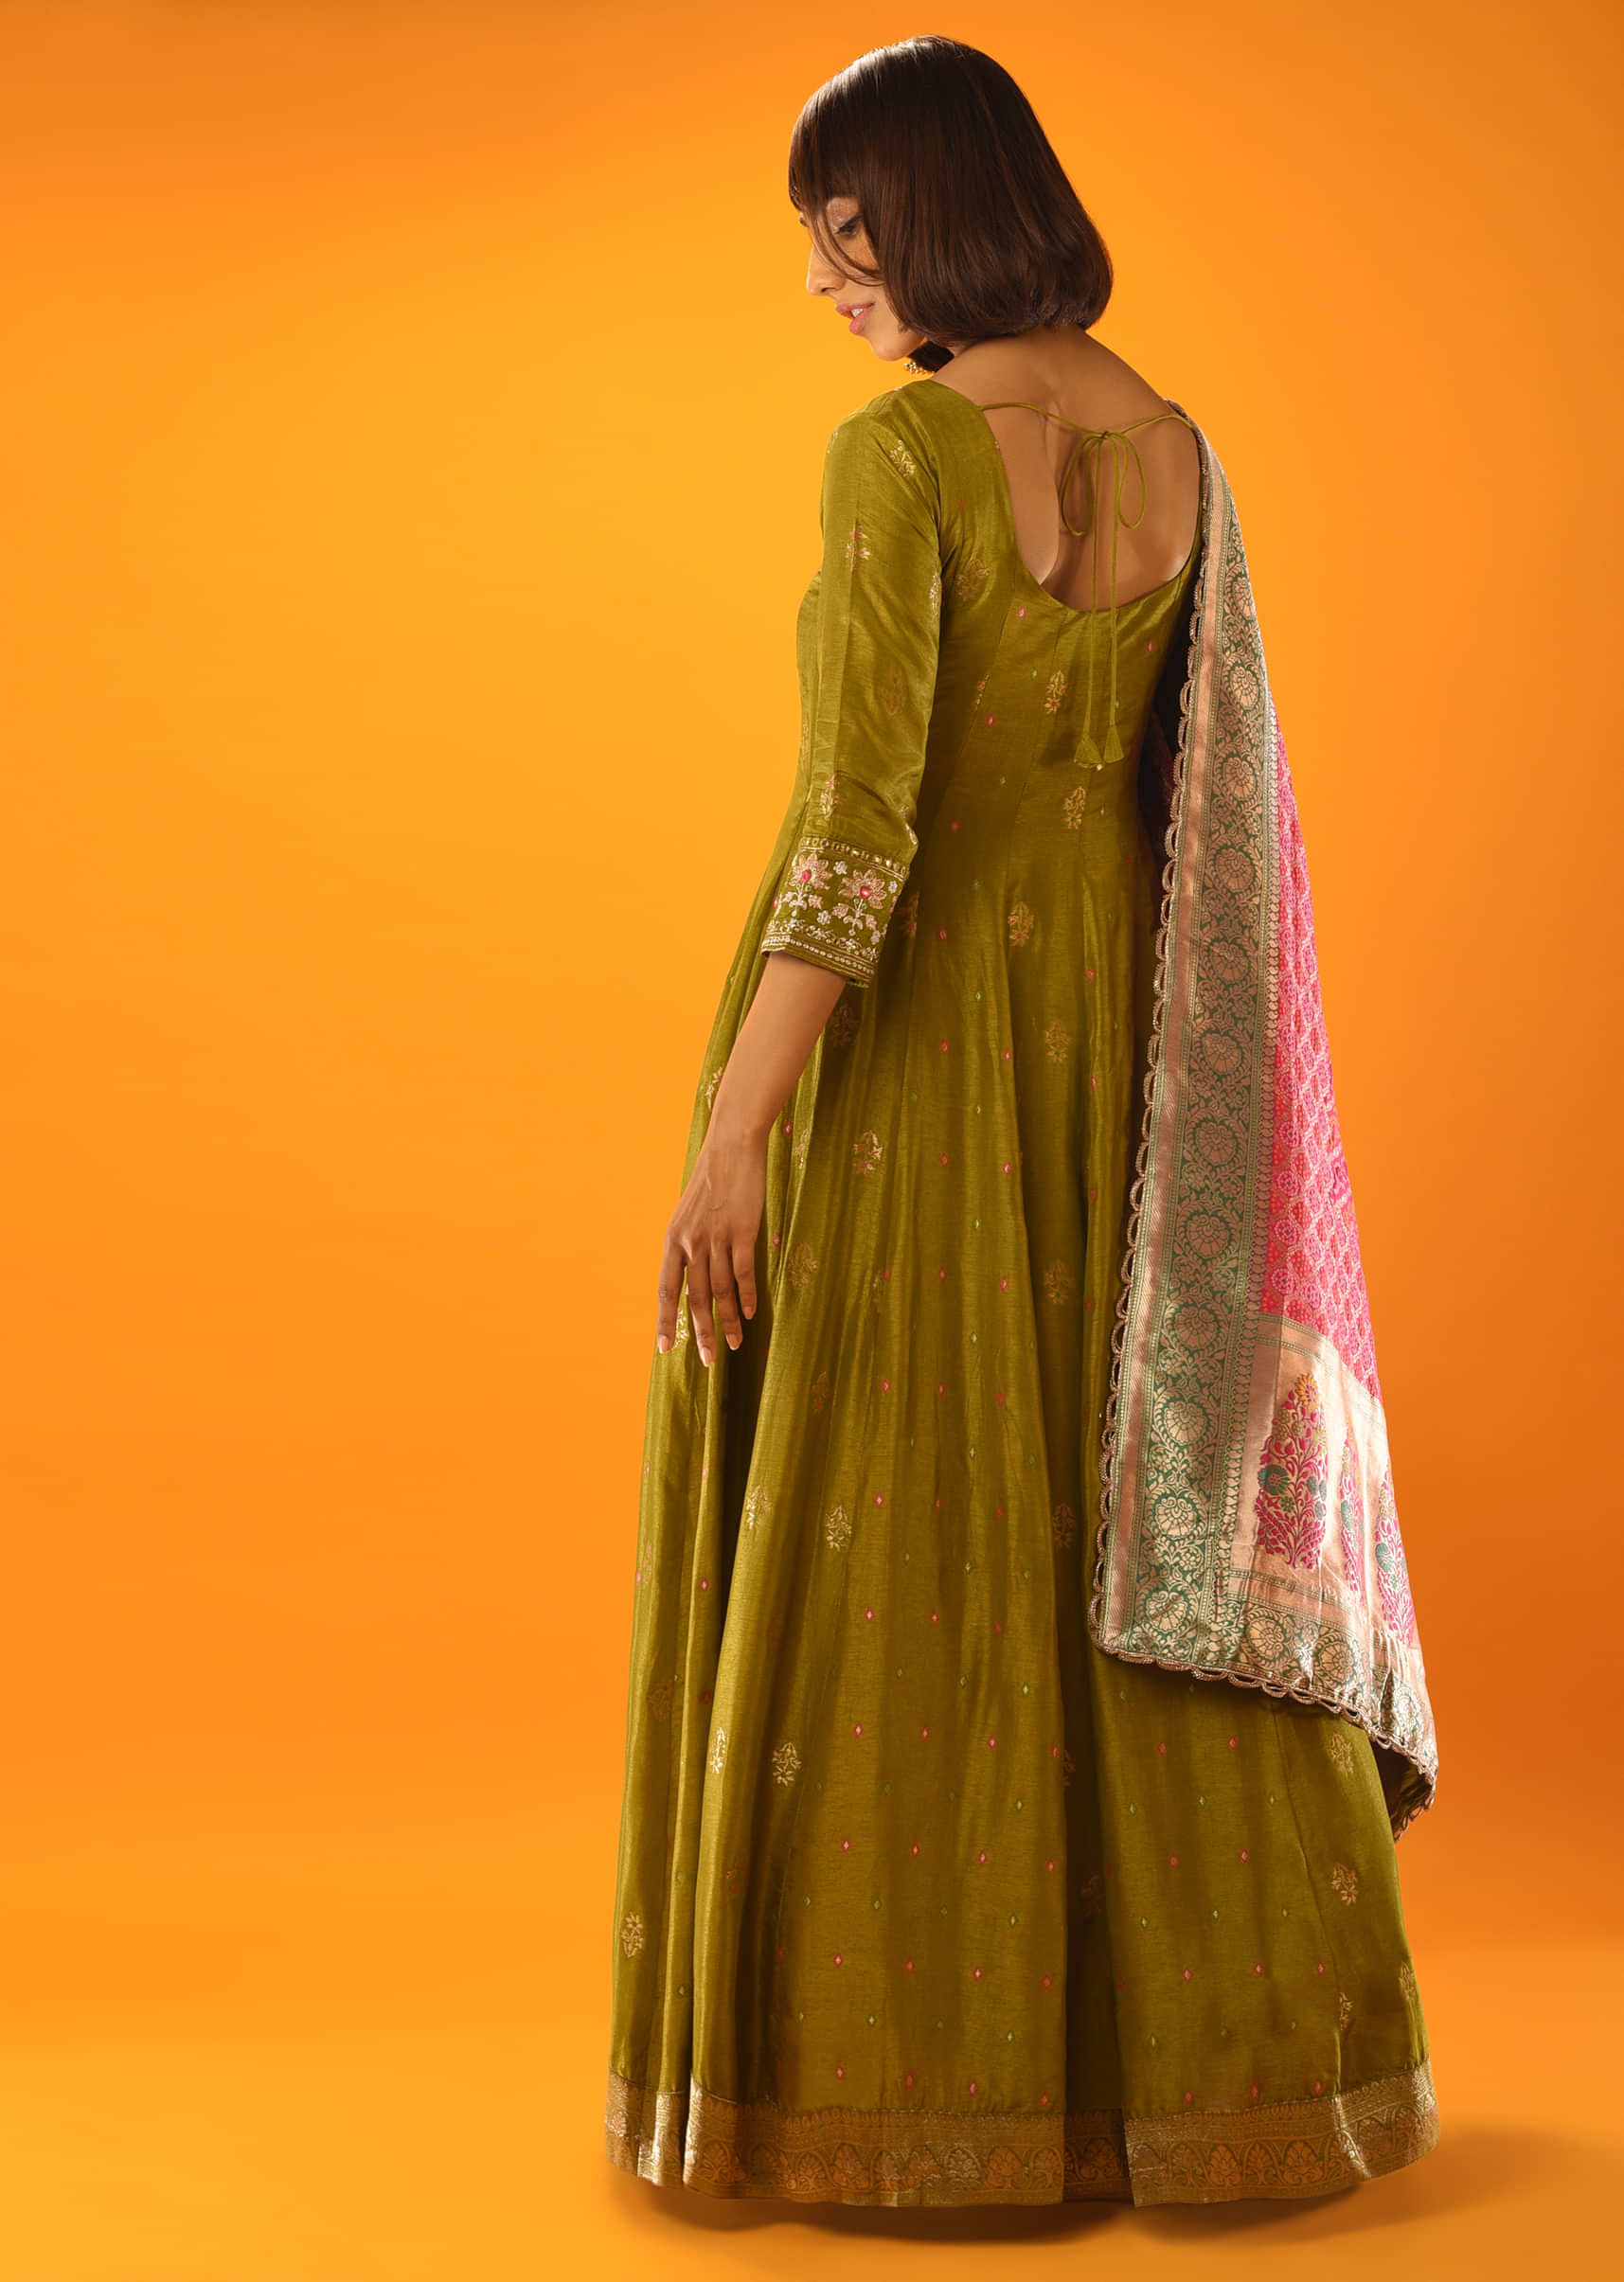 Moss Green Anarkali Suit With Brocade Buttis And Hot Pink Banarasi Dupatta  